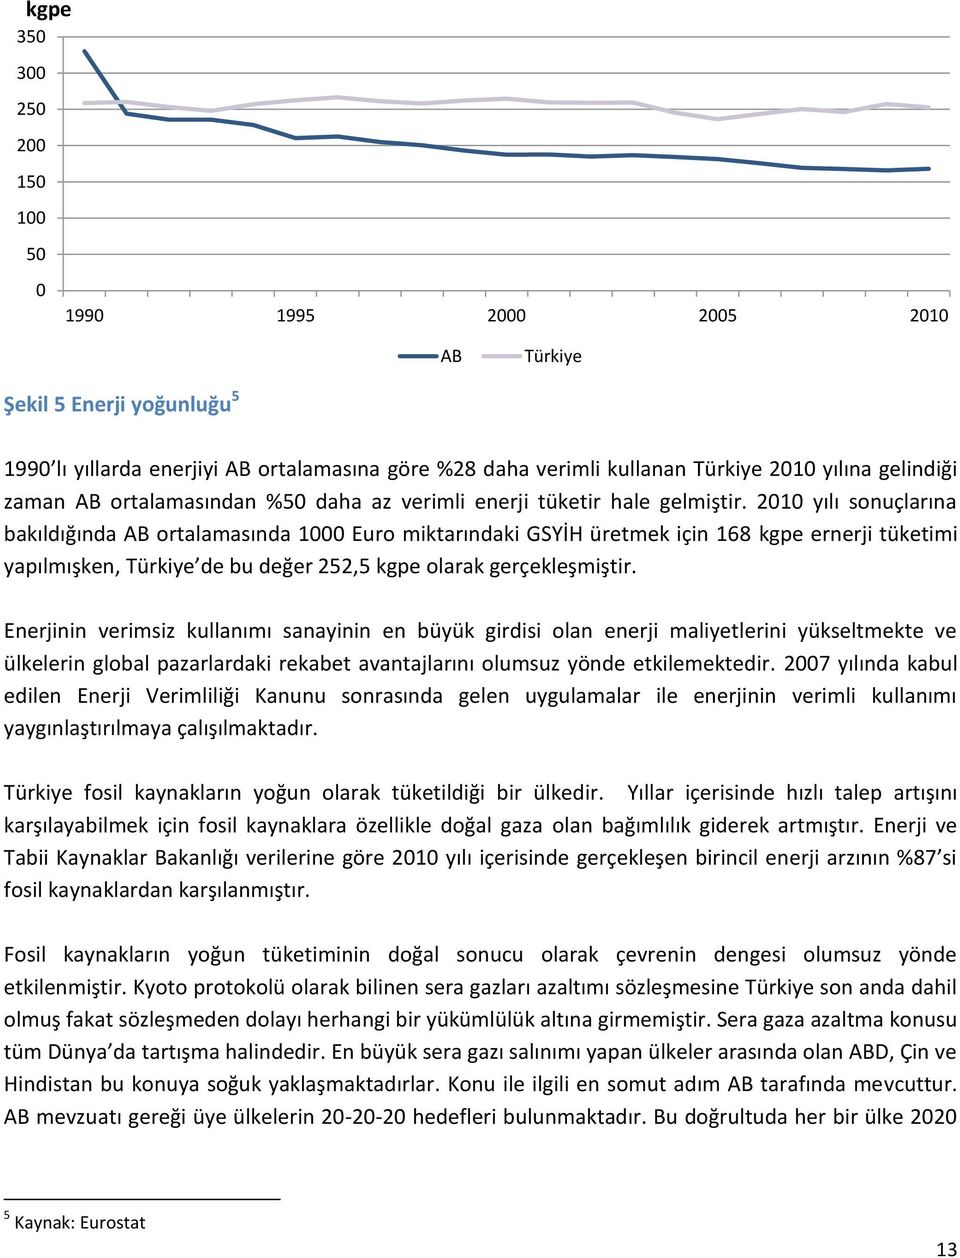 2010 yılı sonuçlarına bakıldığında AB ortalamasında 1000 Euro miktarındaki GSYİH üretmek için 168 kgpe ernerji tüketimi yapılmışken, Türkiye de bu değer 252,5 kgpe olarak gerçekleşmiştir.